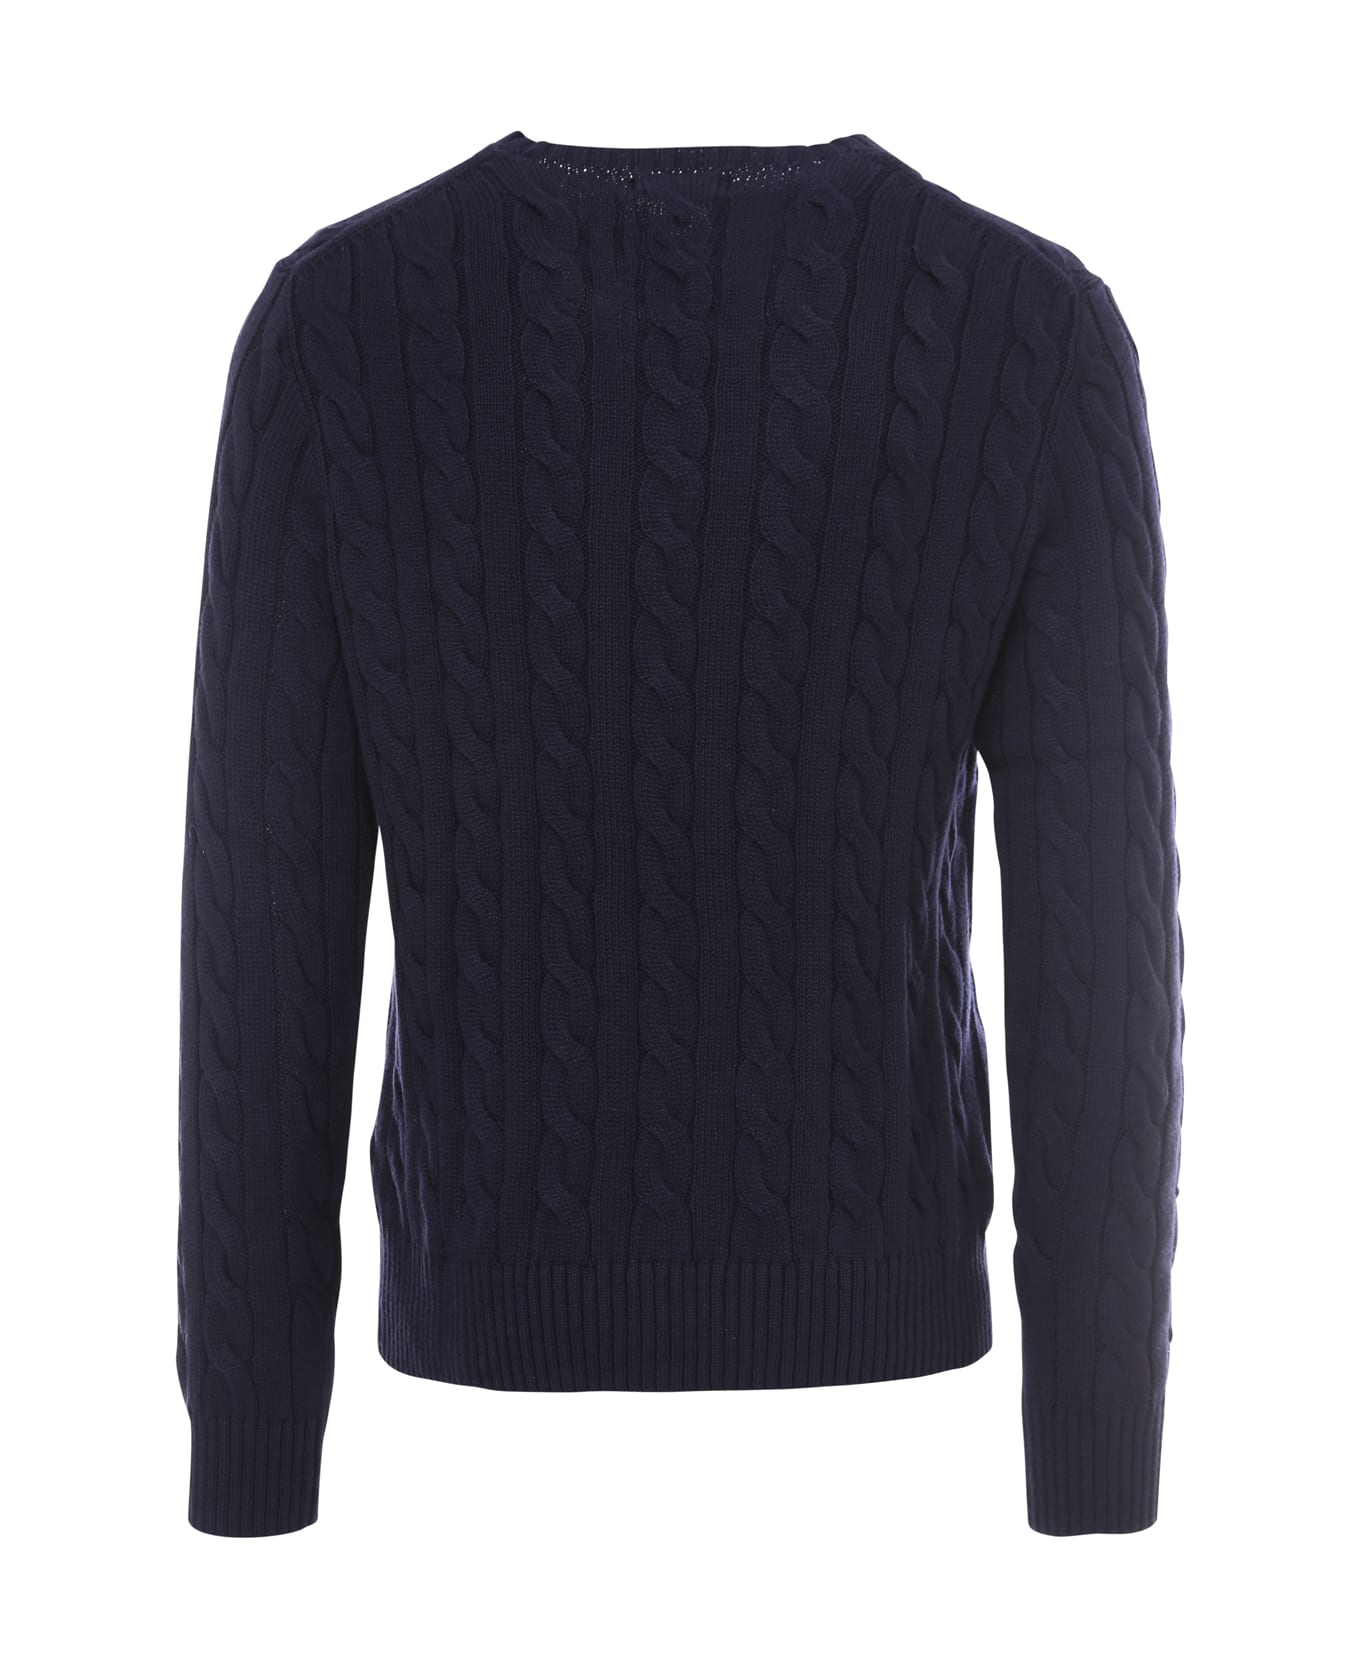 Ralph Lauren Sweater - blue ニットウェア